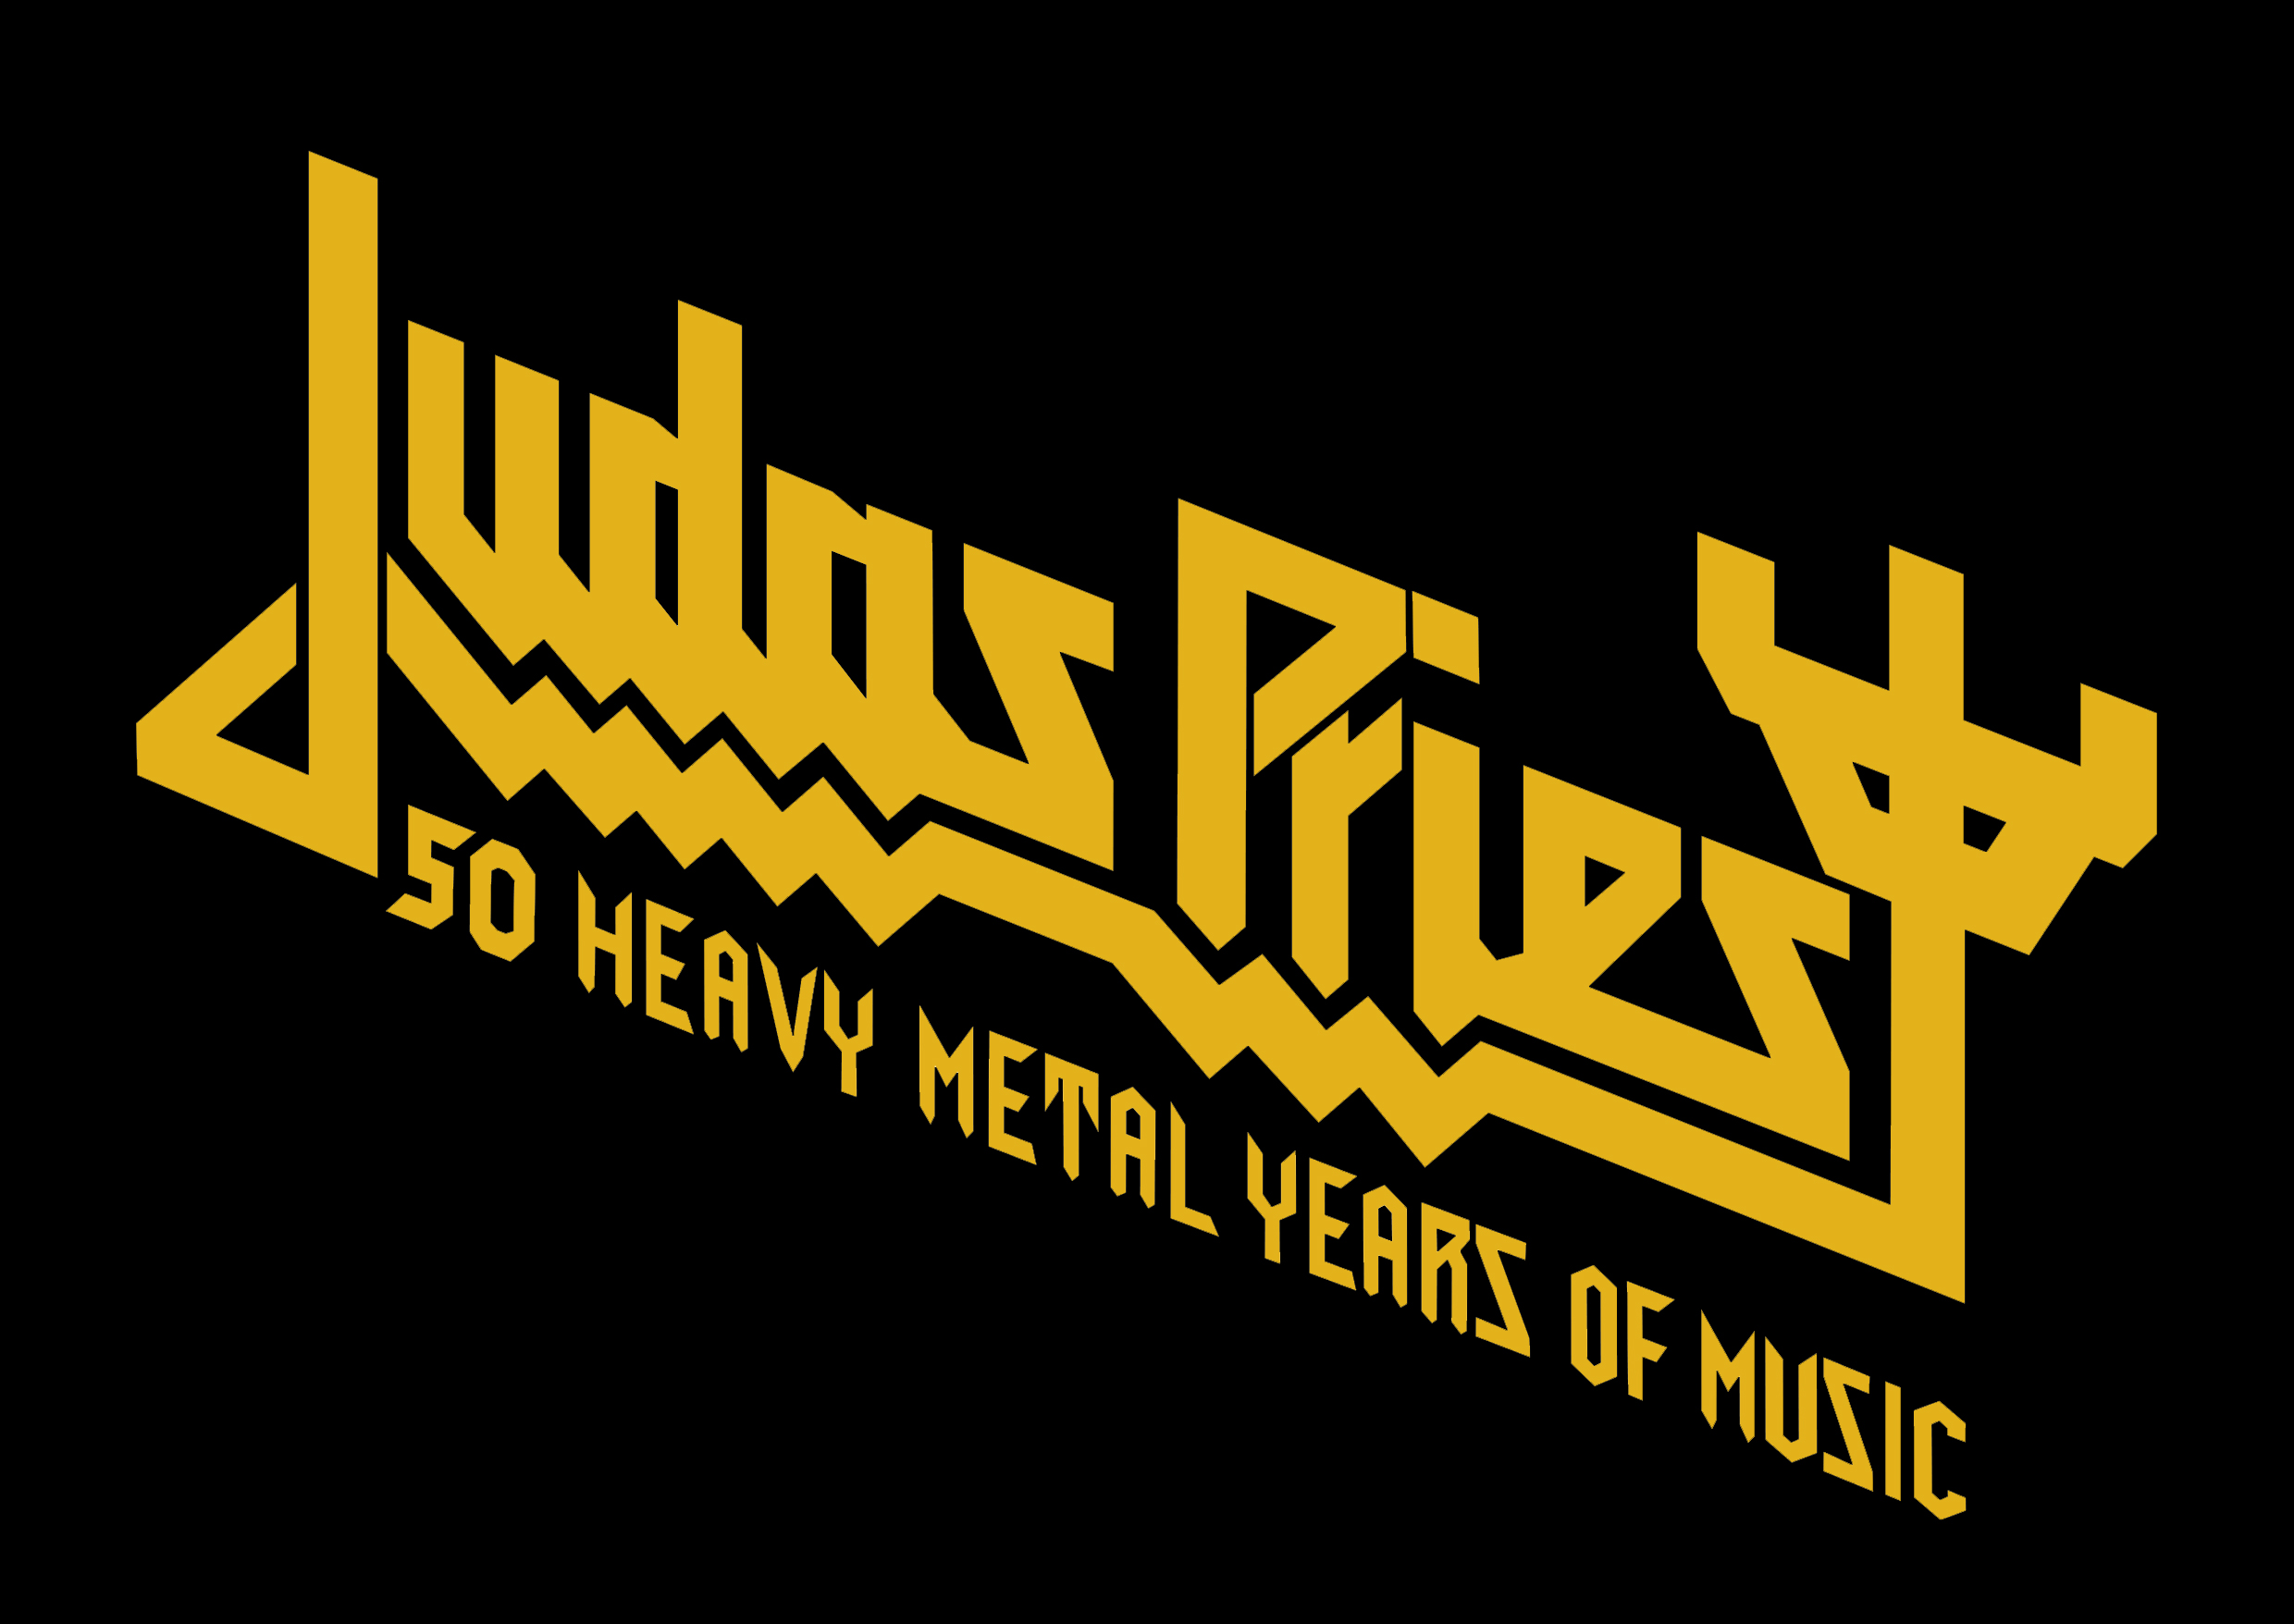 Judas Priest 50 Heavy Metal Years Of Music